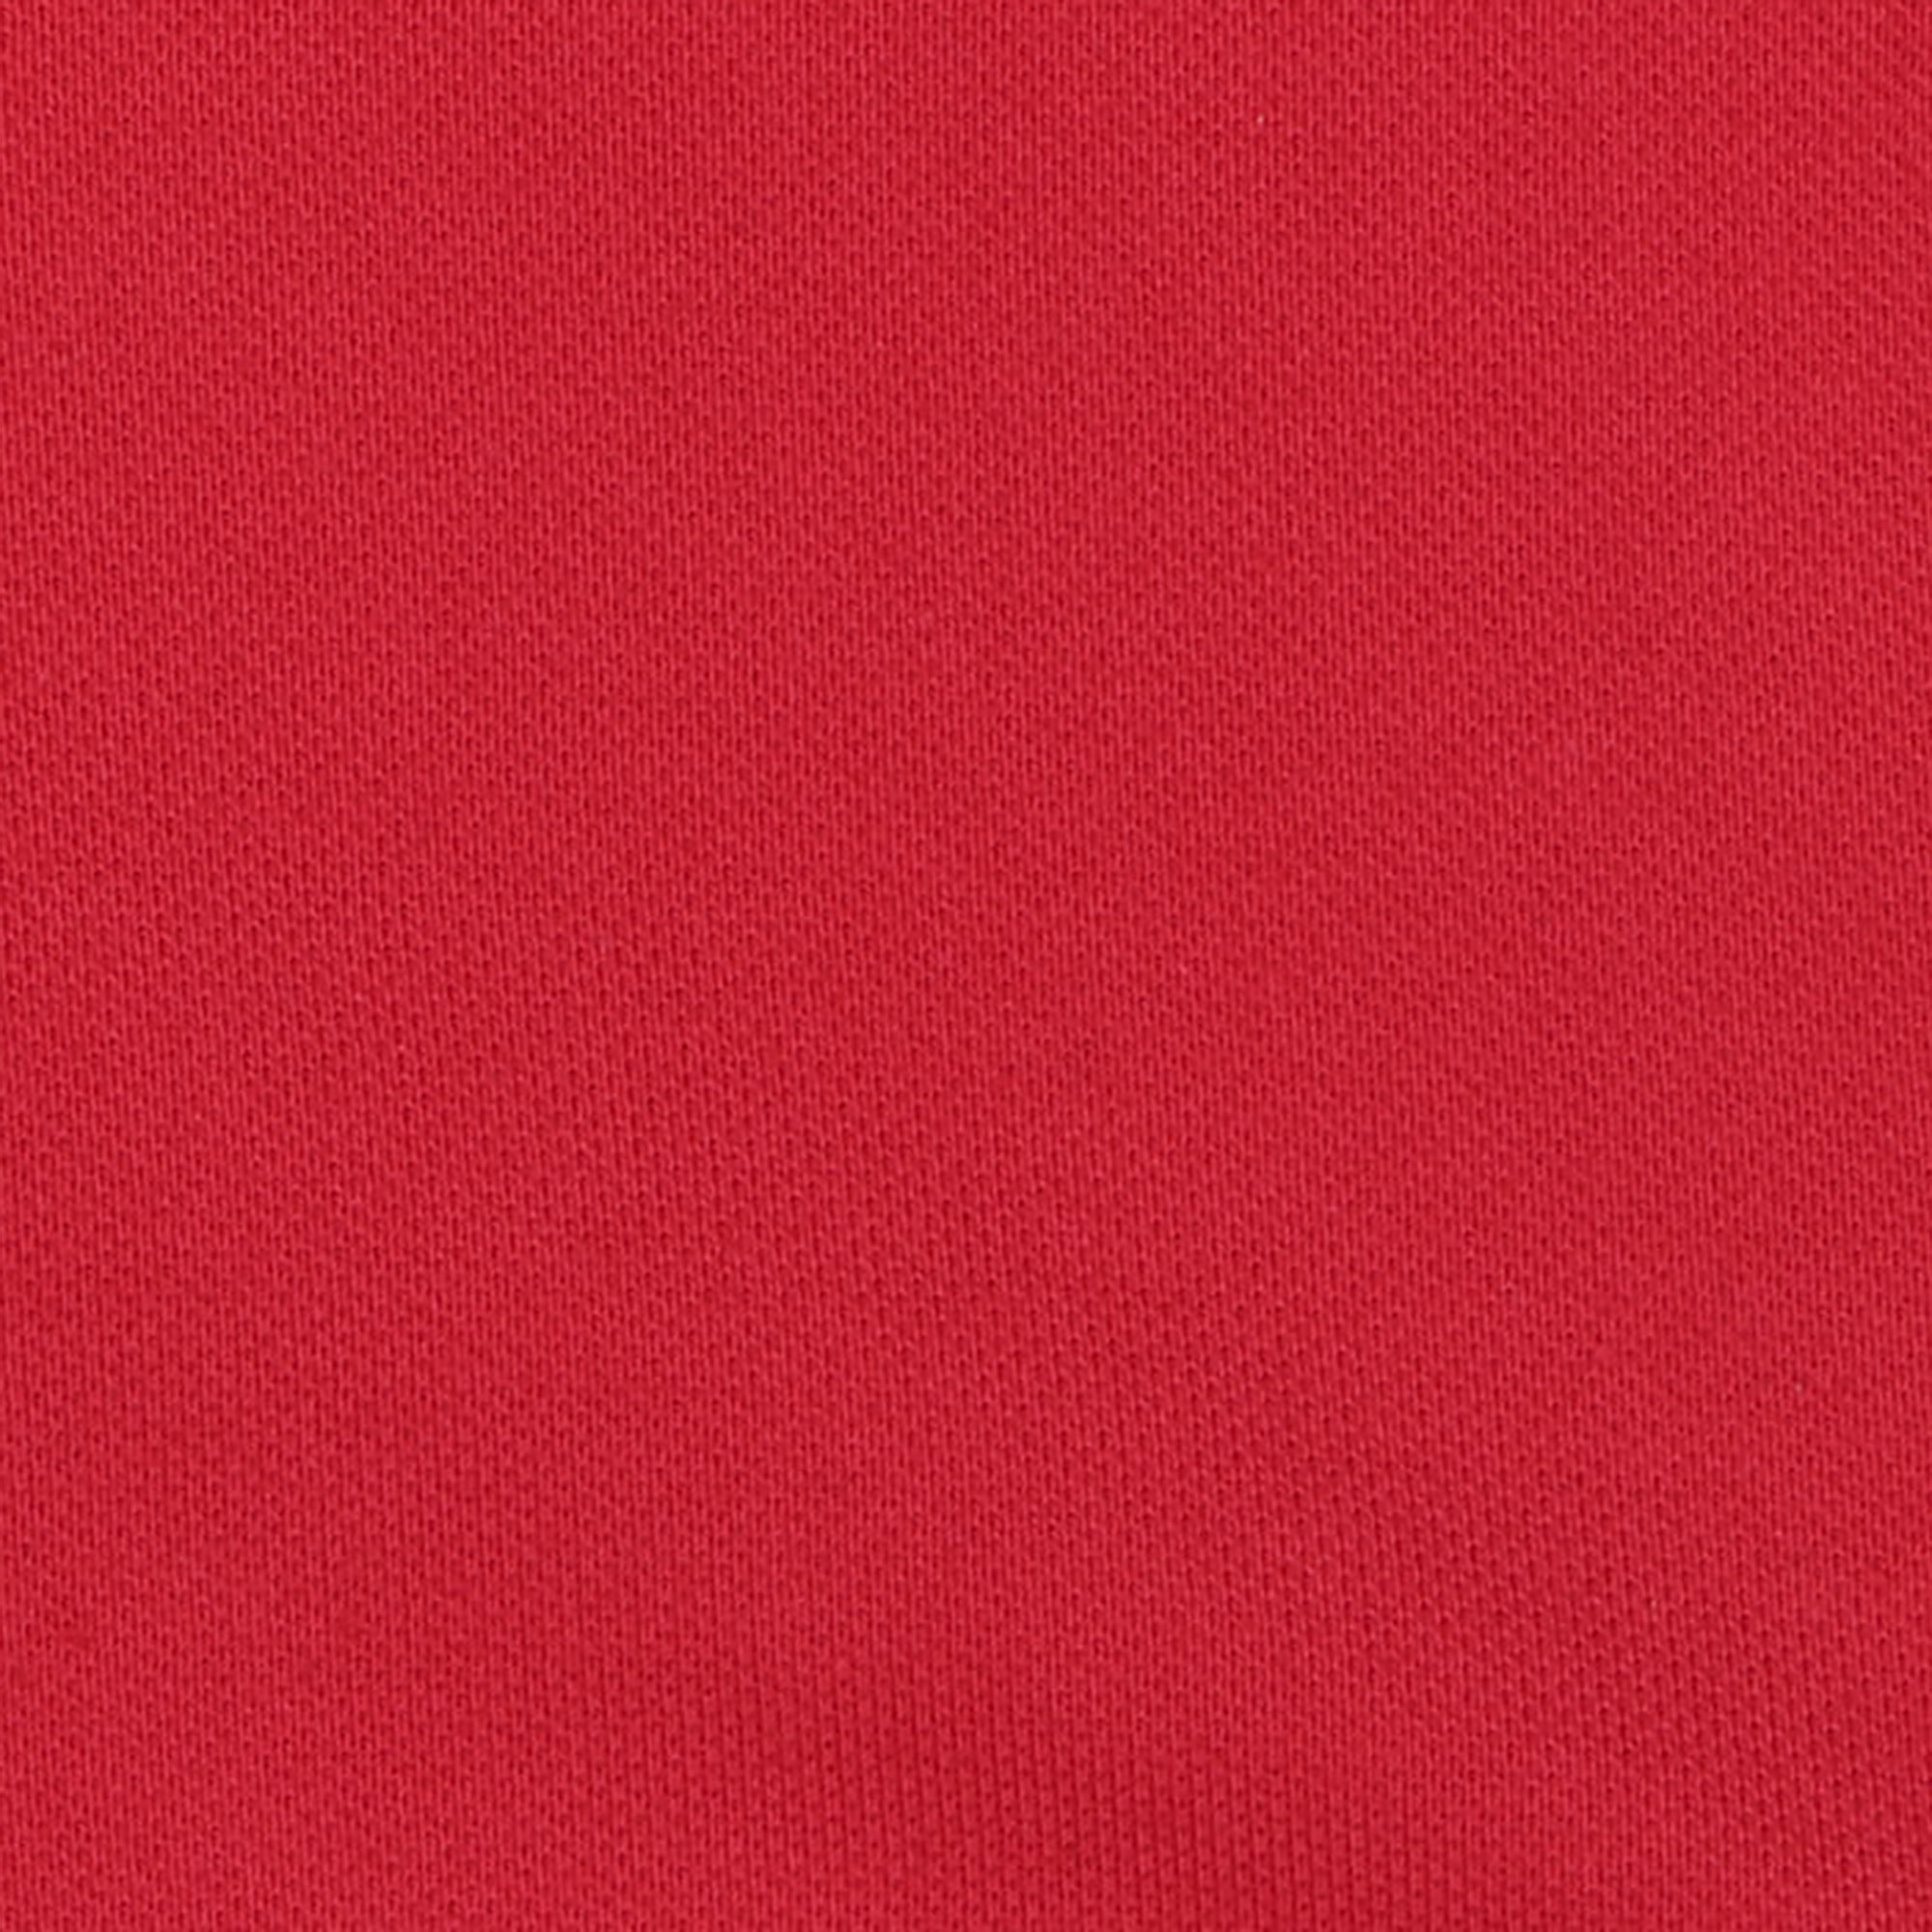 Женское поло AMADEY  с коротким рукавом S красное, цвет красный, размер S - фото 5